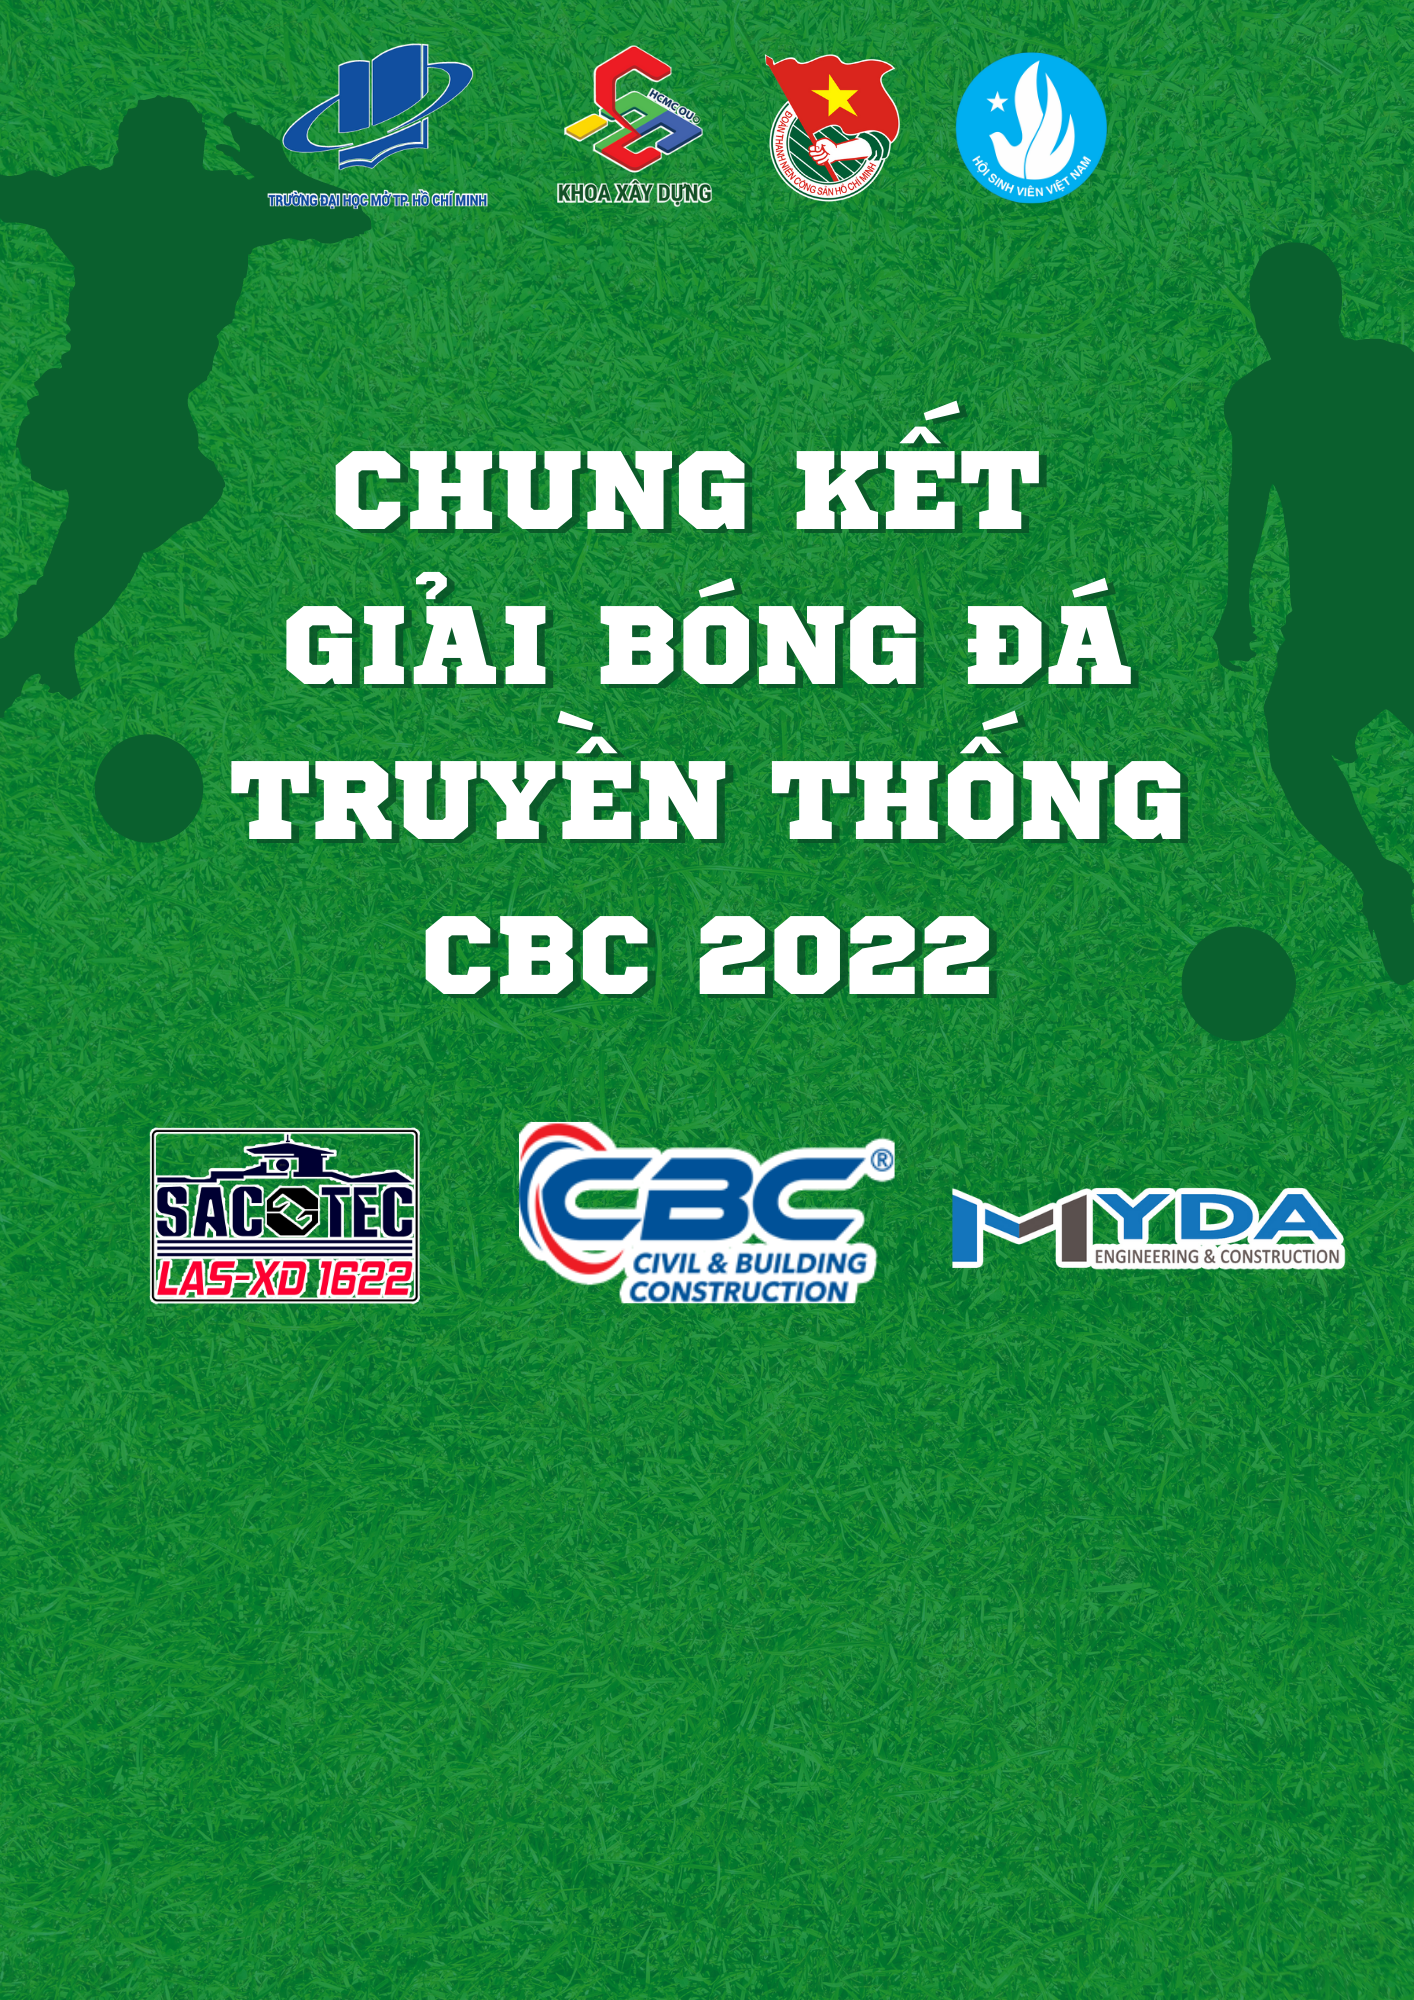 Chung kết giải bóng đá truyền thống CBC 2022